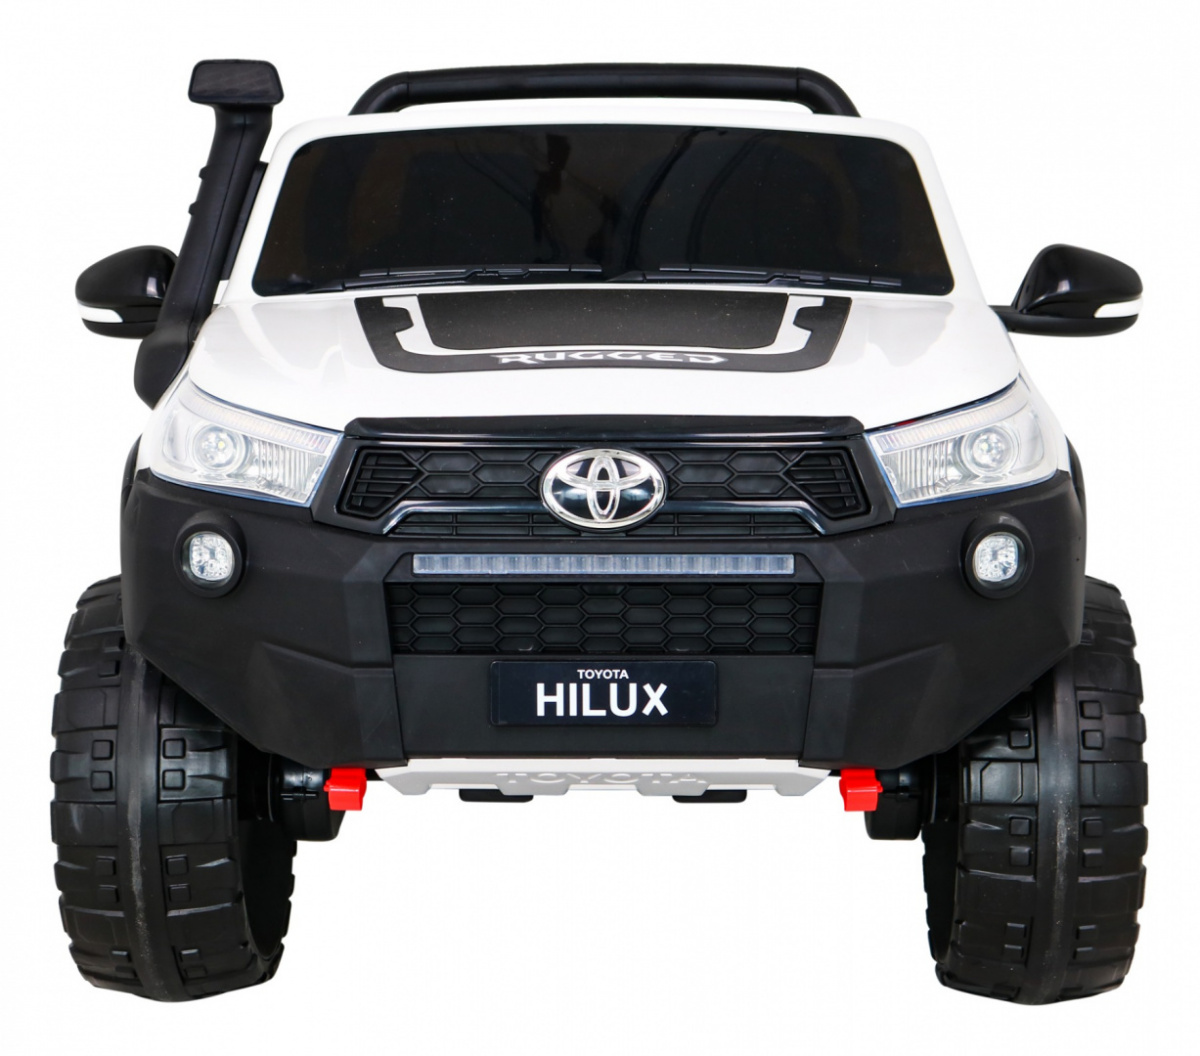 Elektromos kisautó Gio Toyota Hilux 4x4 kétszemélyes terepjáró bőrülés, 2.4 GHZ távirányító, gumi kerék, slusszkulcs, 2db 12 Voltos akkumulátor - kép 6